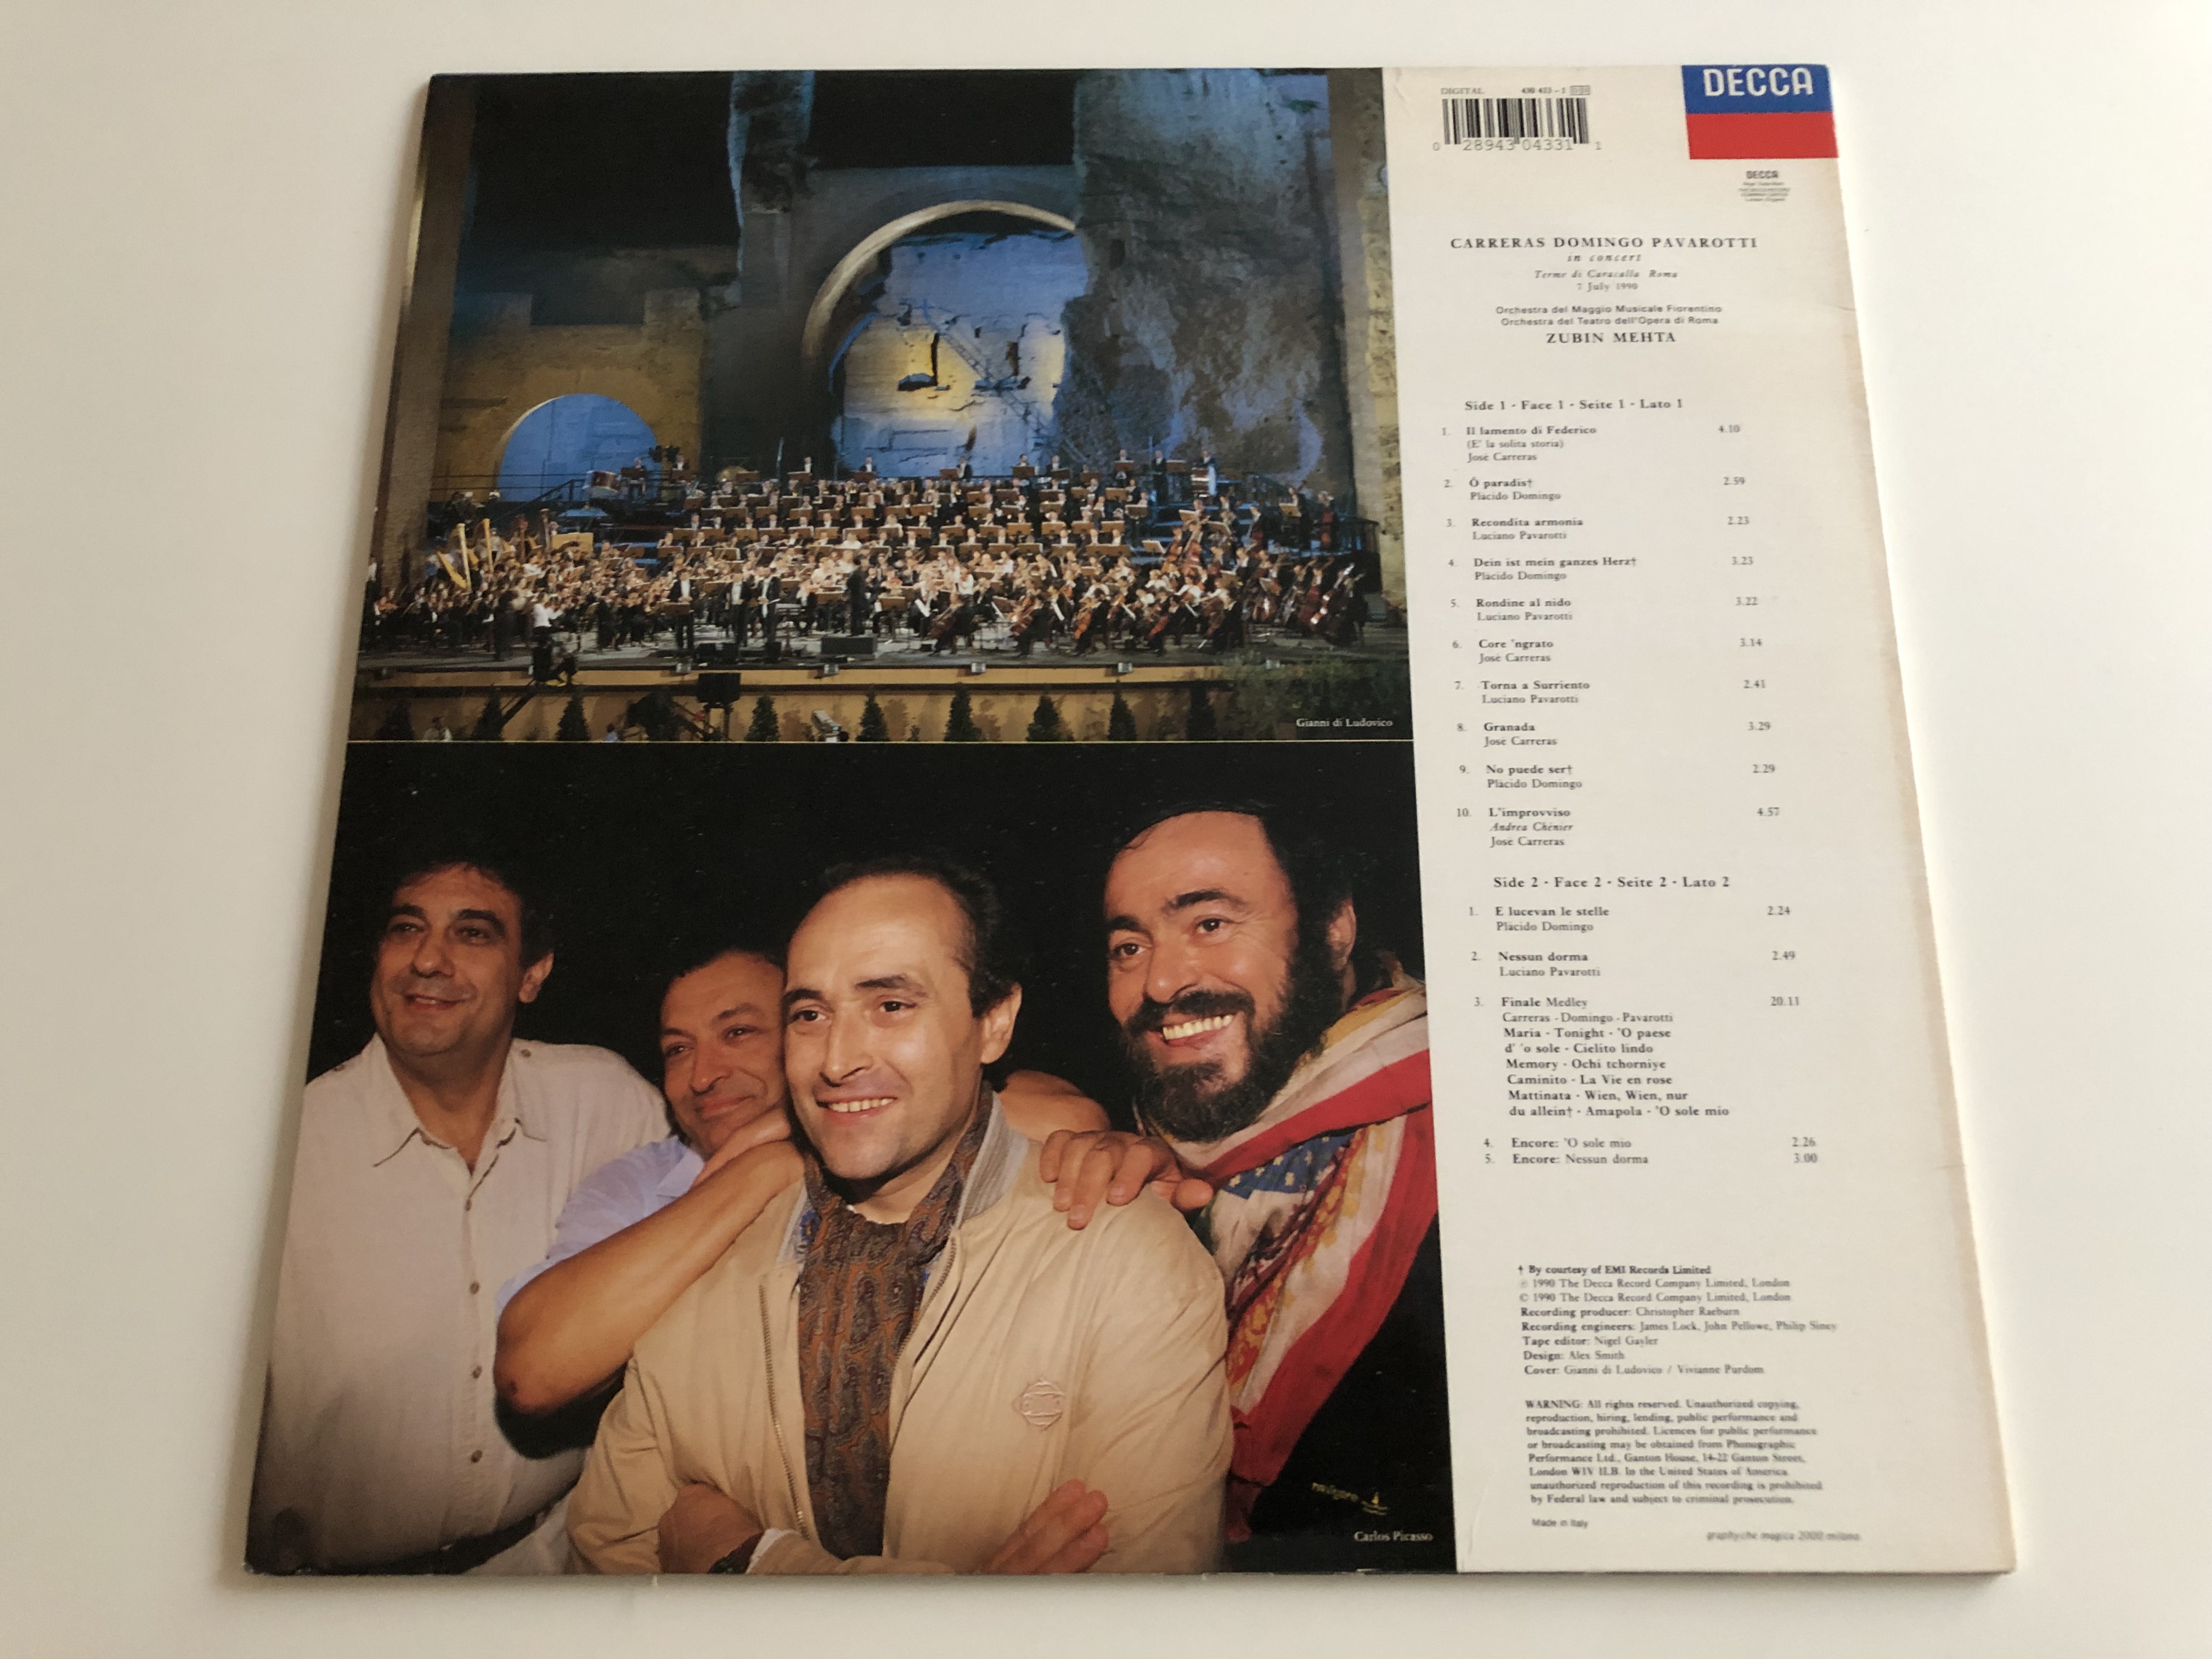 carreras-domingo-pavarotti-in-concert-mehta-decca-lp-430-433-1-2-.jpg